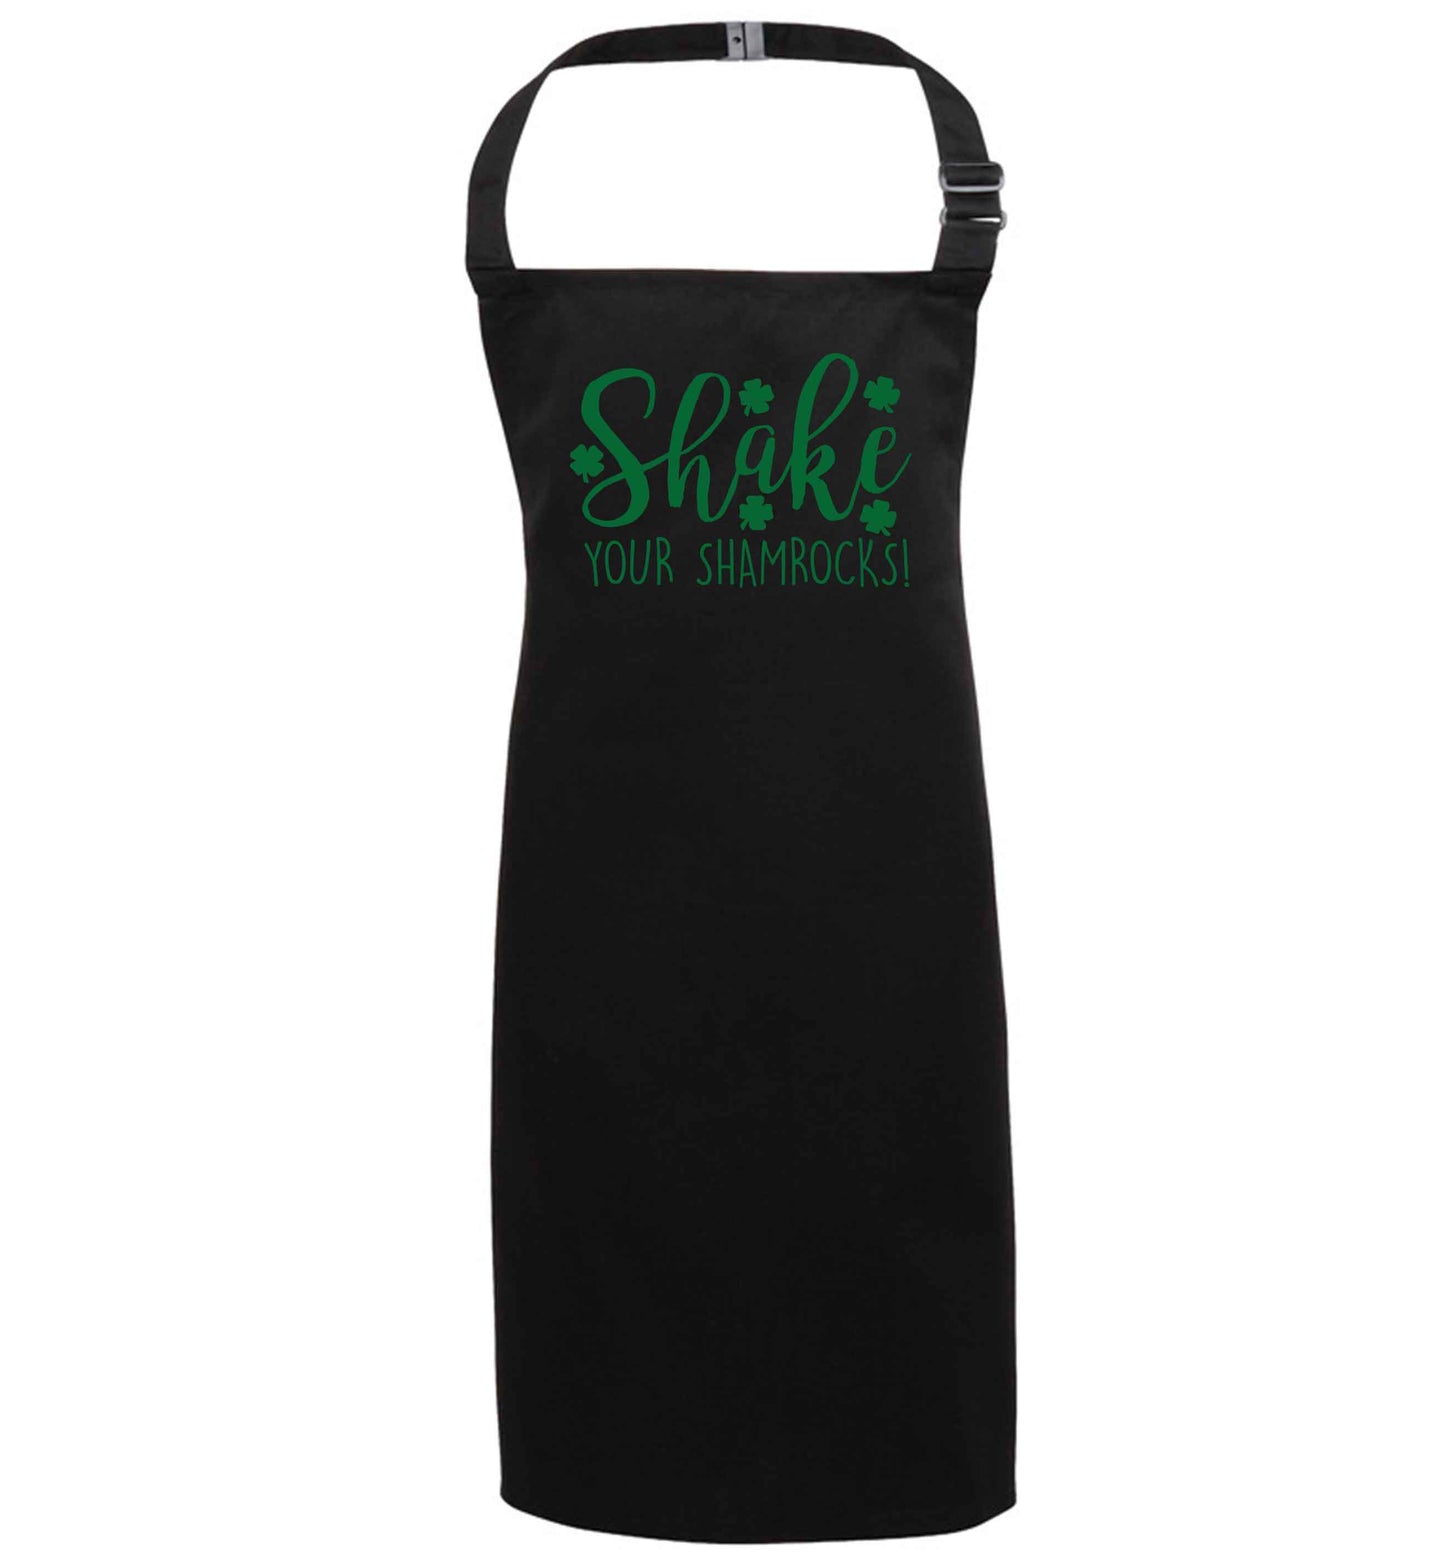 Shake your shamrocks black apron 7-10 years